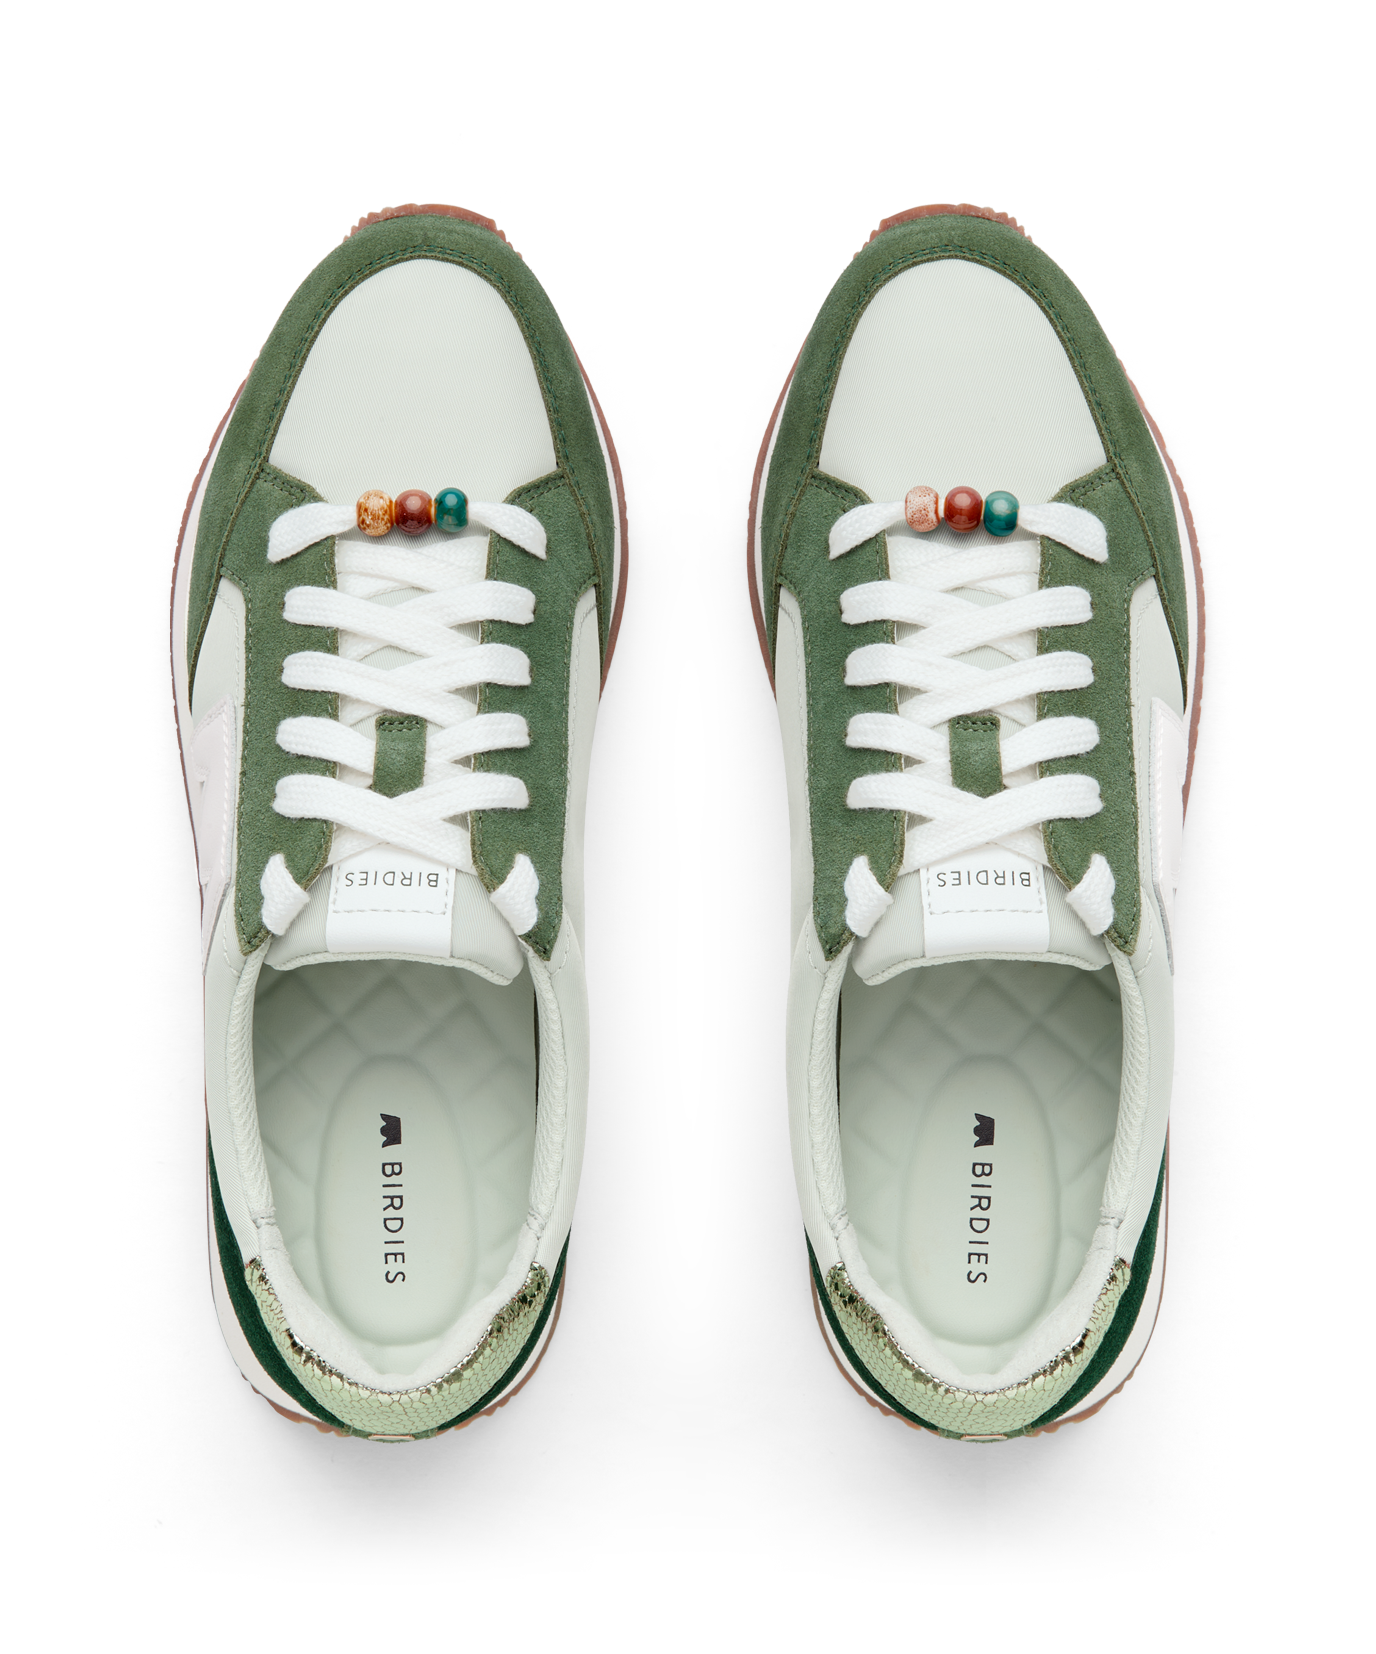 Colorichiari two-tone lace-up shoes - Neutrals